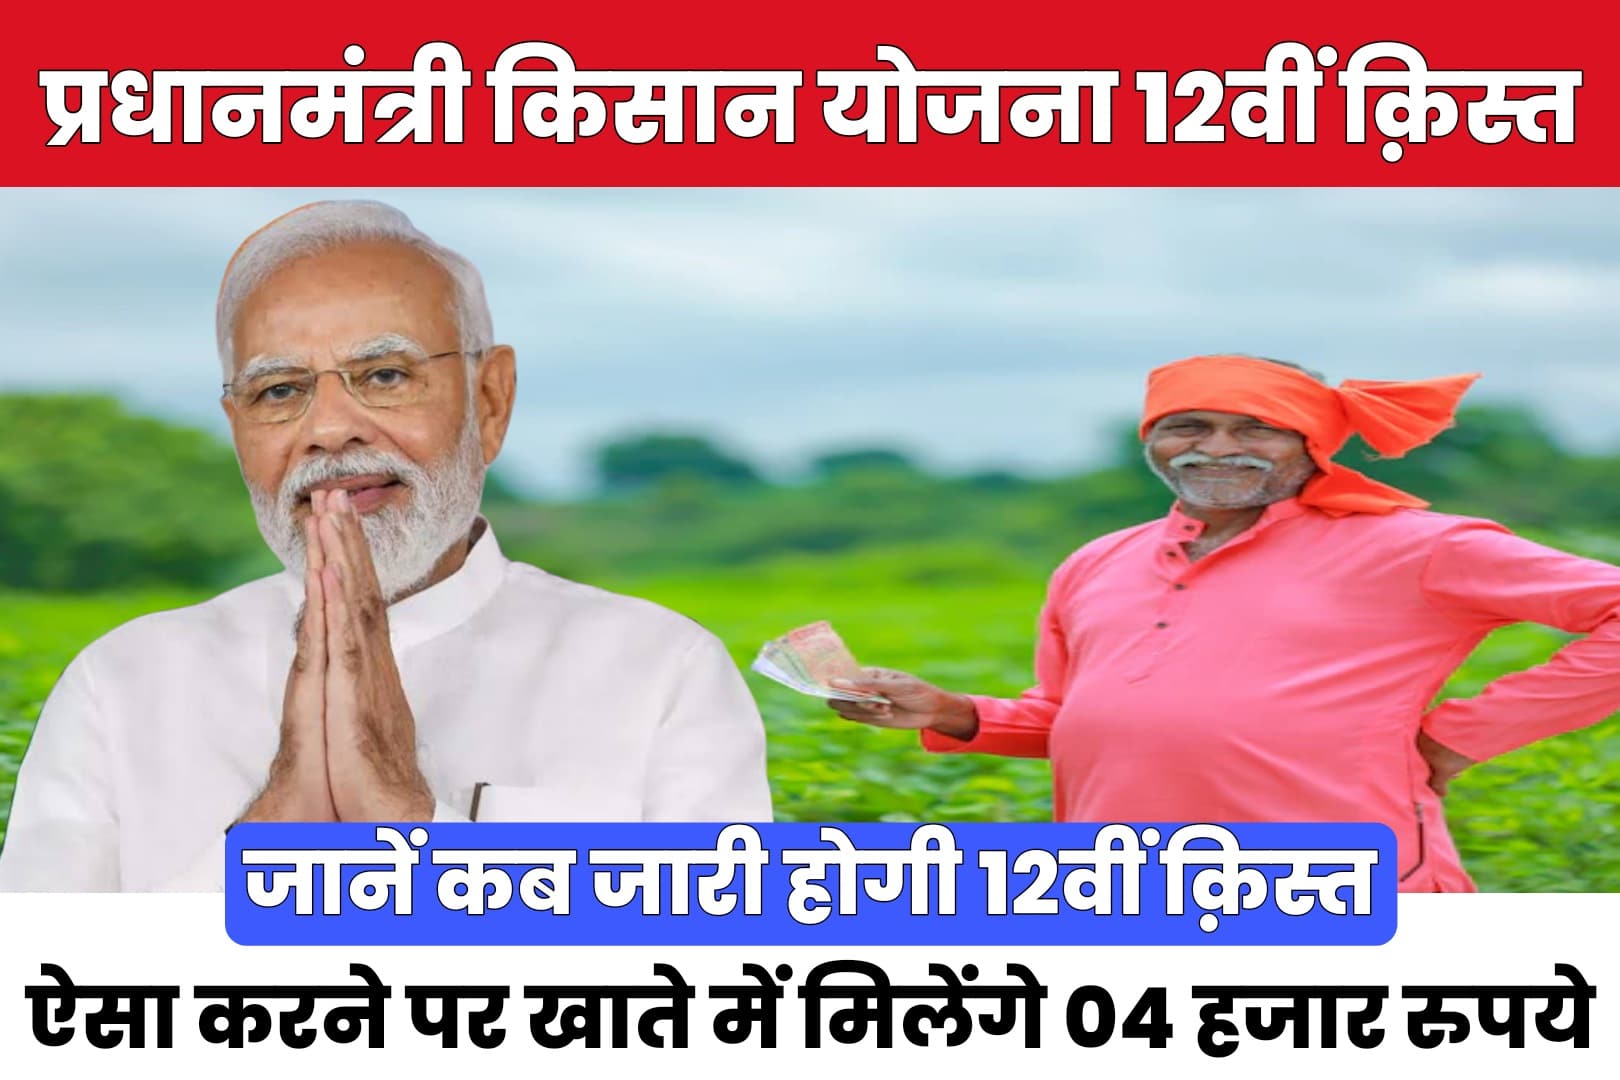 PM Kisan 12th Installment : जानें कब आएगी 12वीं क़िस्त, किसानों को मिलेंगे इस बार 04 हजार रुपये, बस करना होगा ये काम